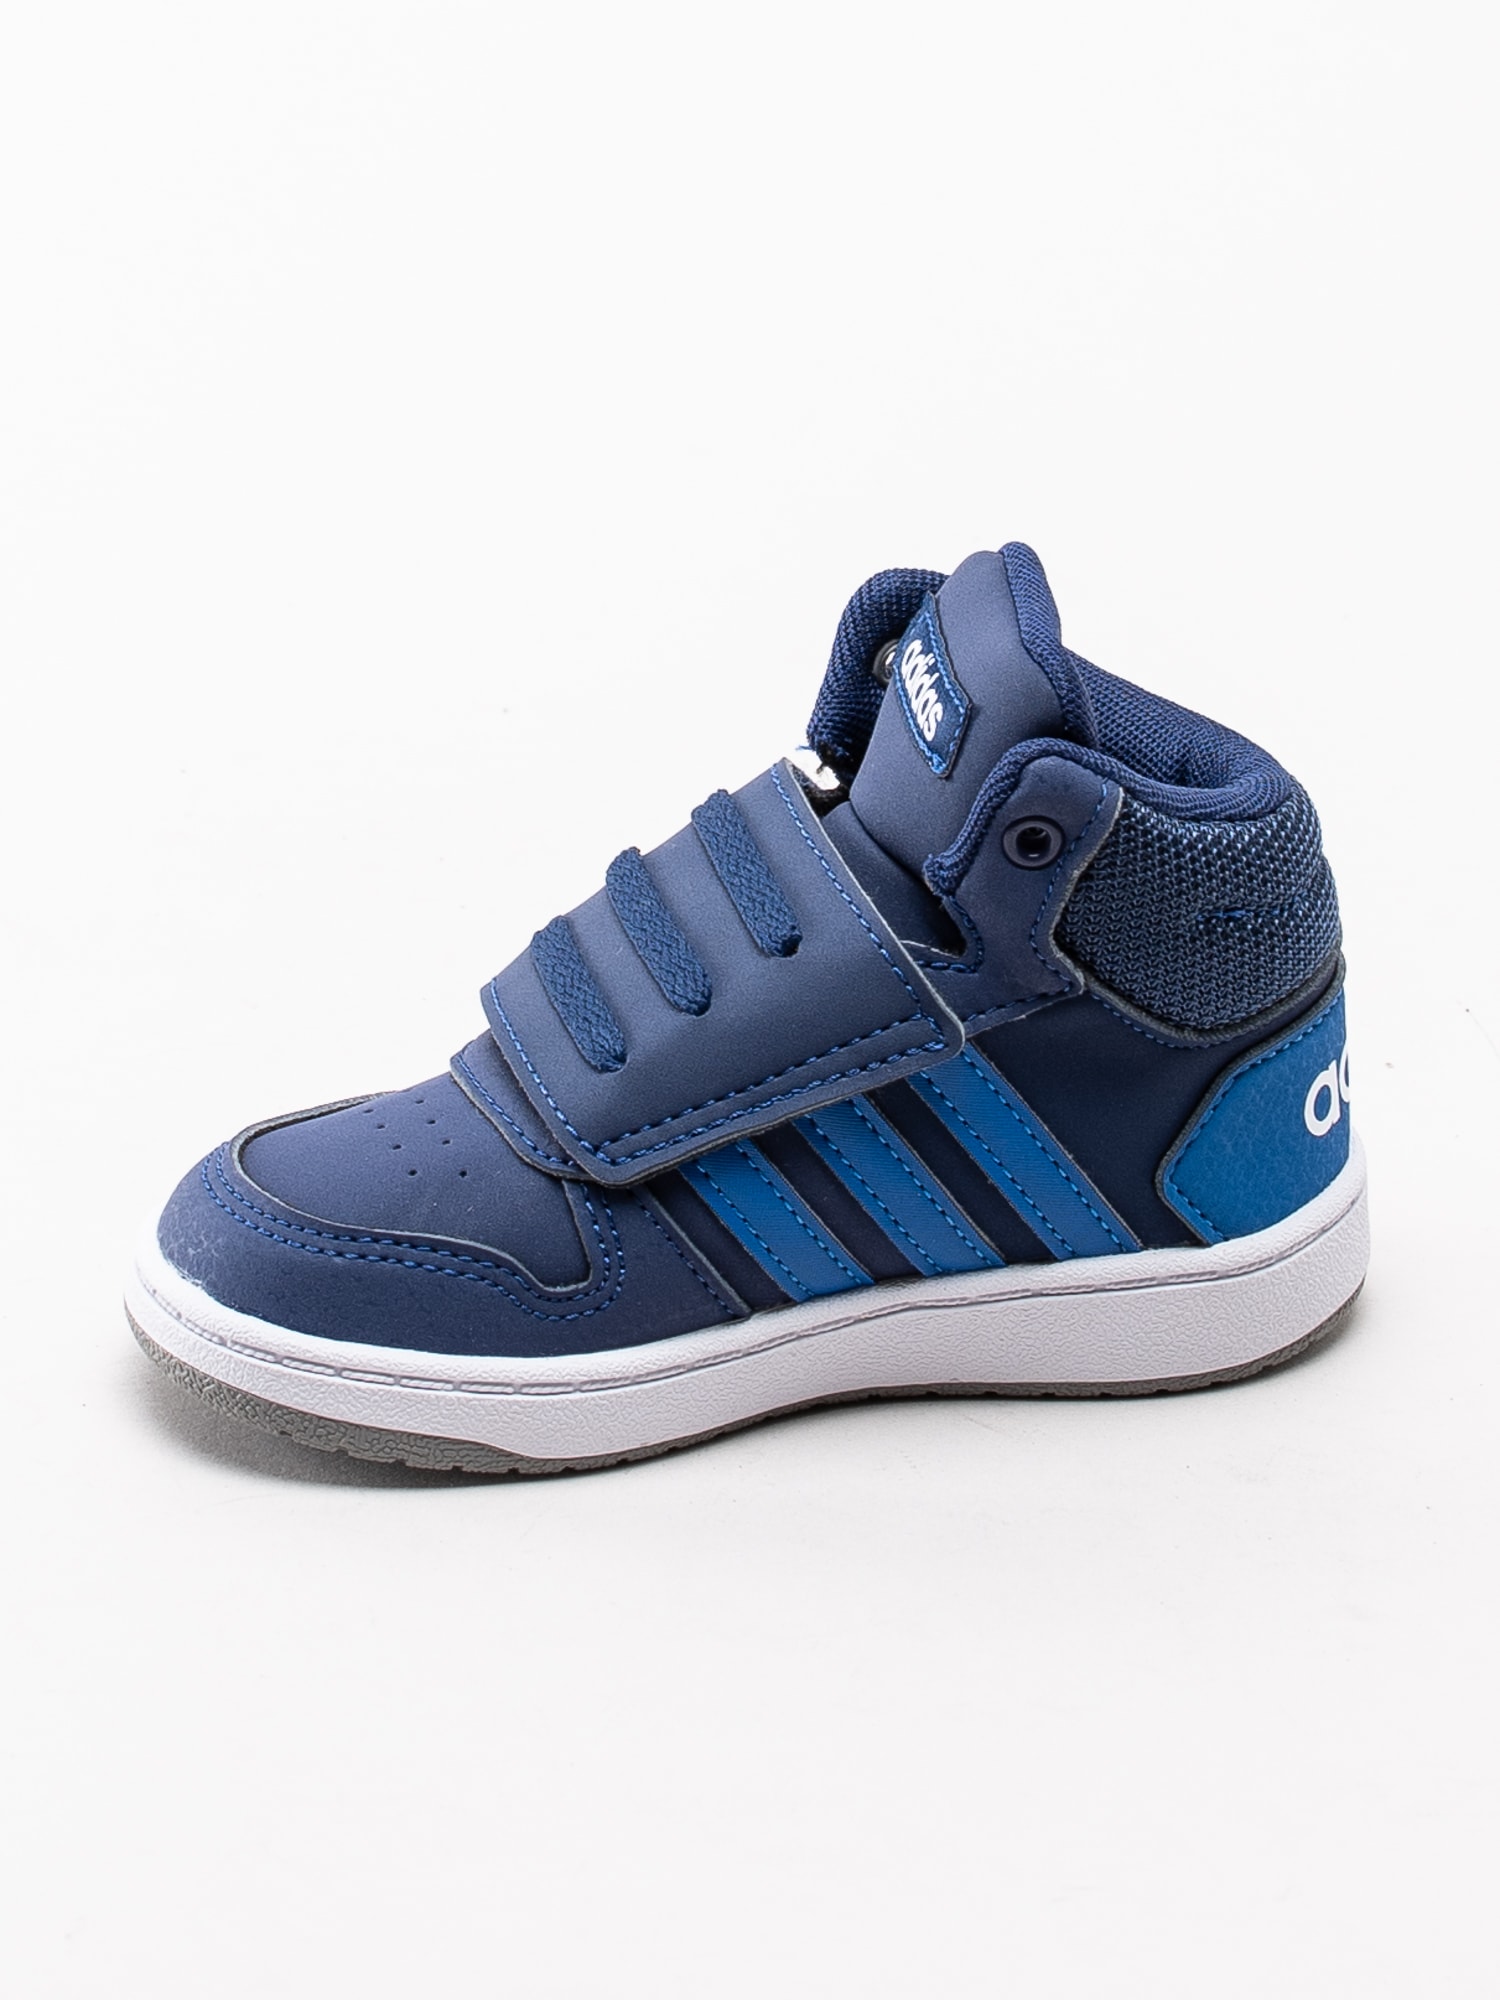 56193008 Adidas Hoops Mid 2.0 Infant EE6714 mörkblå höga sneakers för dem små med kardborre-2